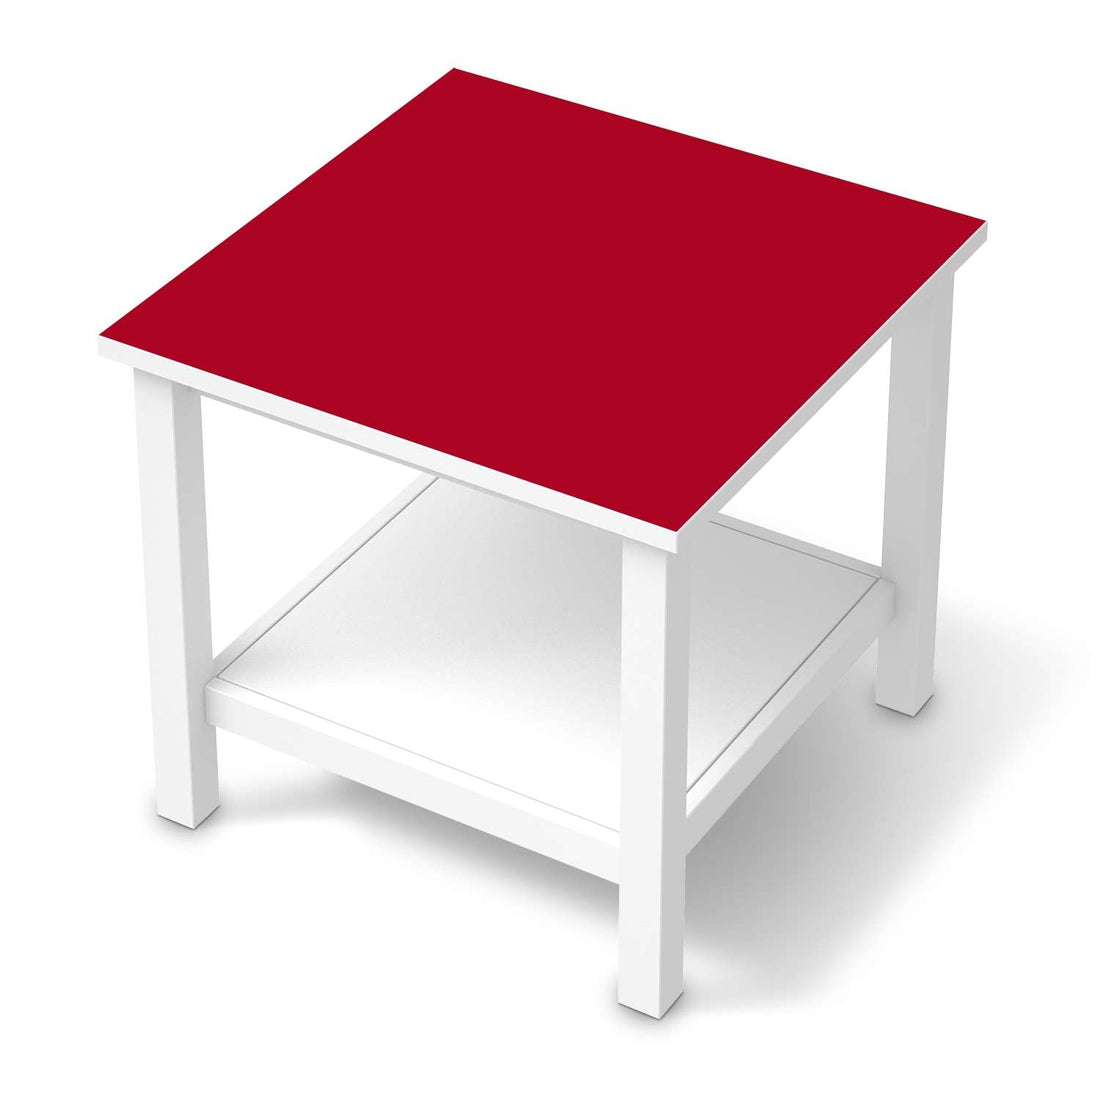 Möbel Klebefolie Rot Dark - IKEA Hemnes Beistelltisch 55x55 cm  - weiss